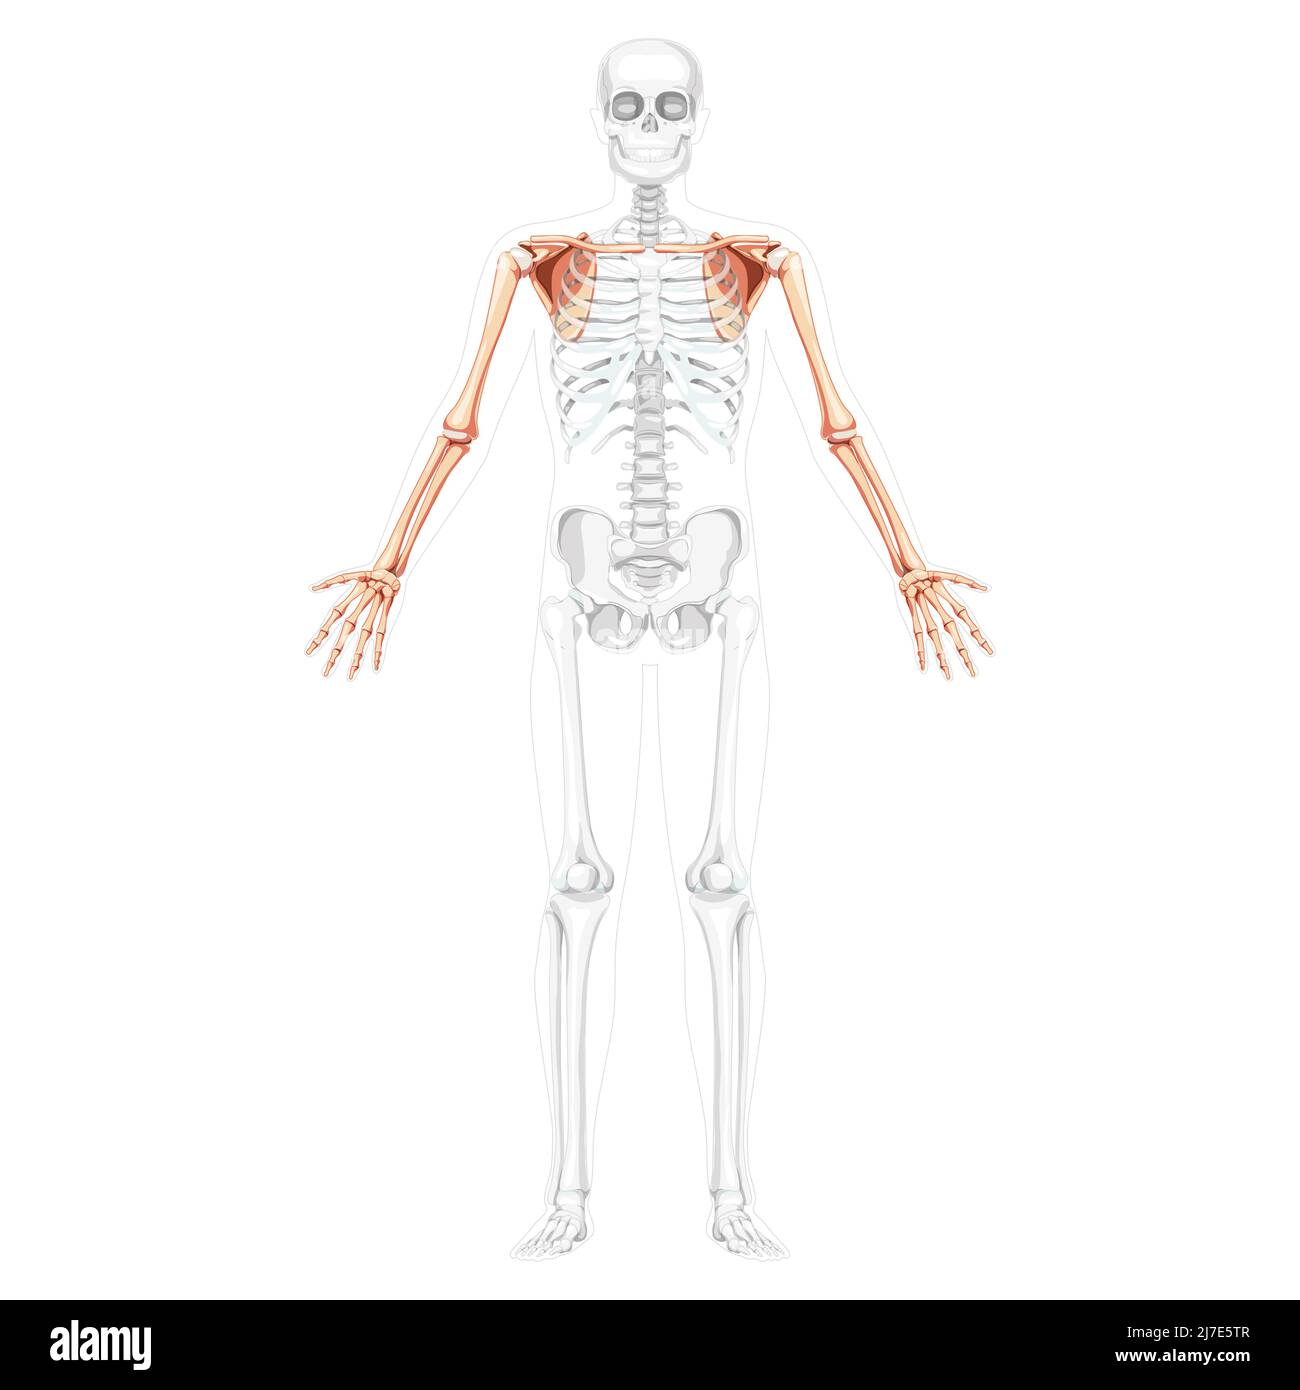 Scheletro arto superiore braccia con cintura a spalla Vista frontale umana con due braccia pose con ossa trasparenti. Avambracci immagine vettoriale piatta realistica dell'anatomia isolata su sfondo bianco Illustrazione Vettoriale